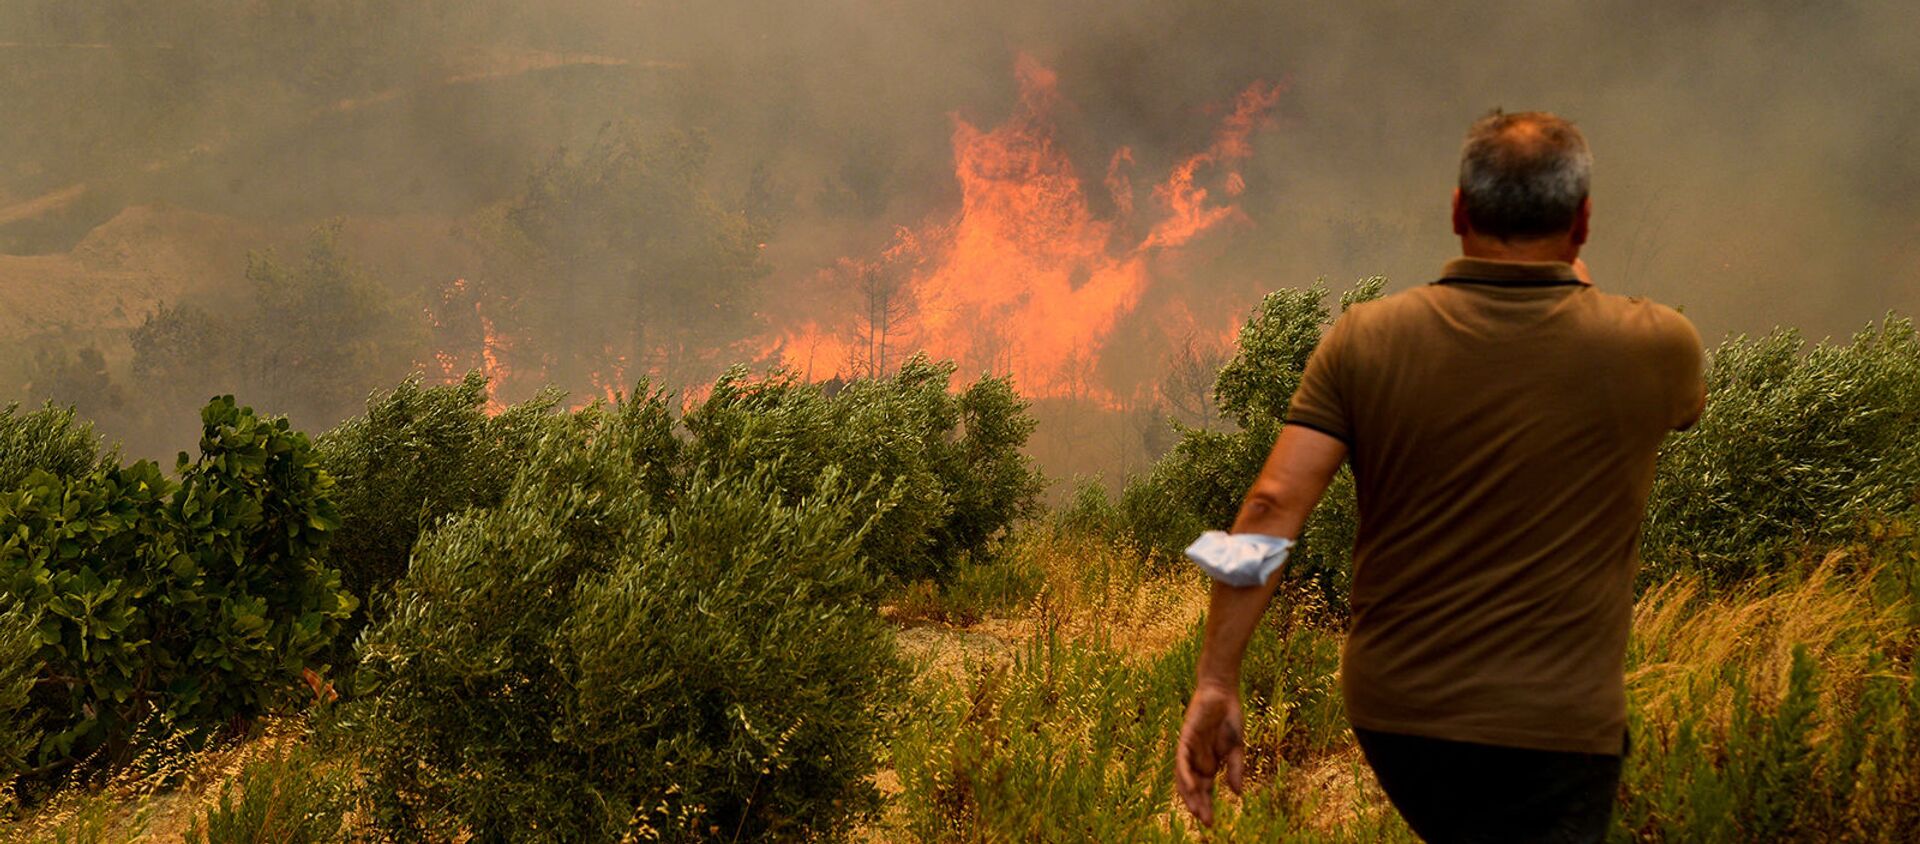 Мкжчина на фоне лесного пожара (29 июля 2021). Турция - Sputnik Արմենիա, 1920, 05.08.2021